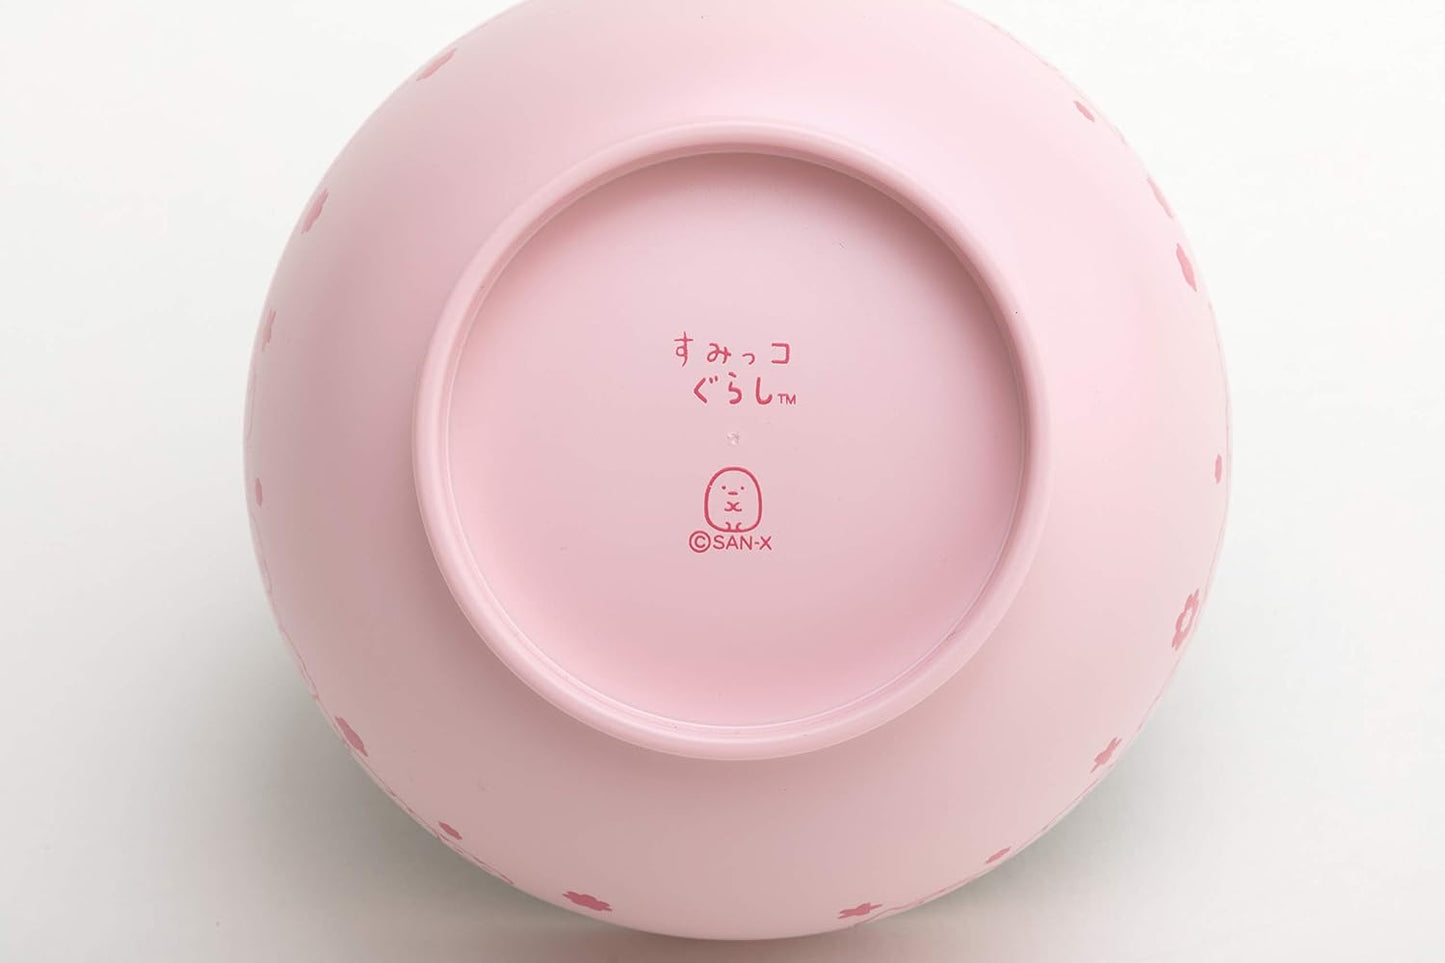 San-X Sumikko Gurashi  Bowl KA06101